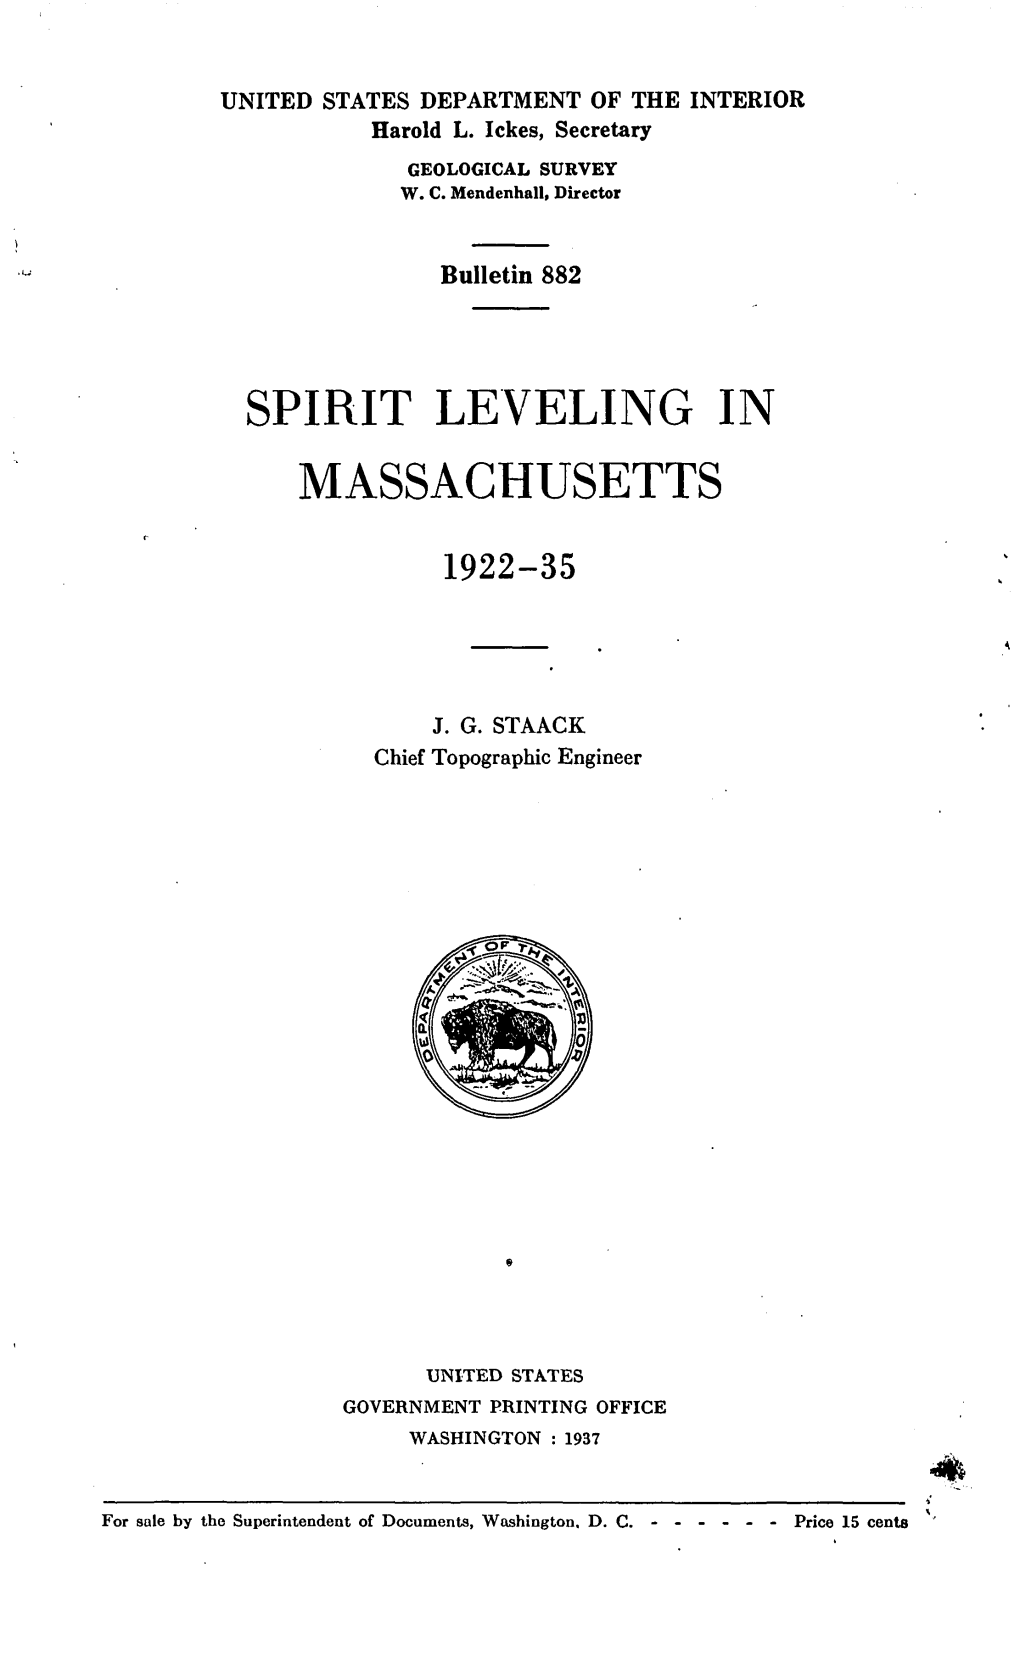 Spirit Leveling in Massachusetts